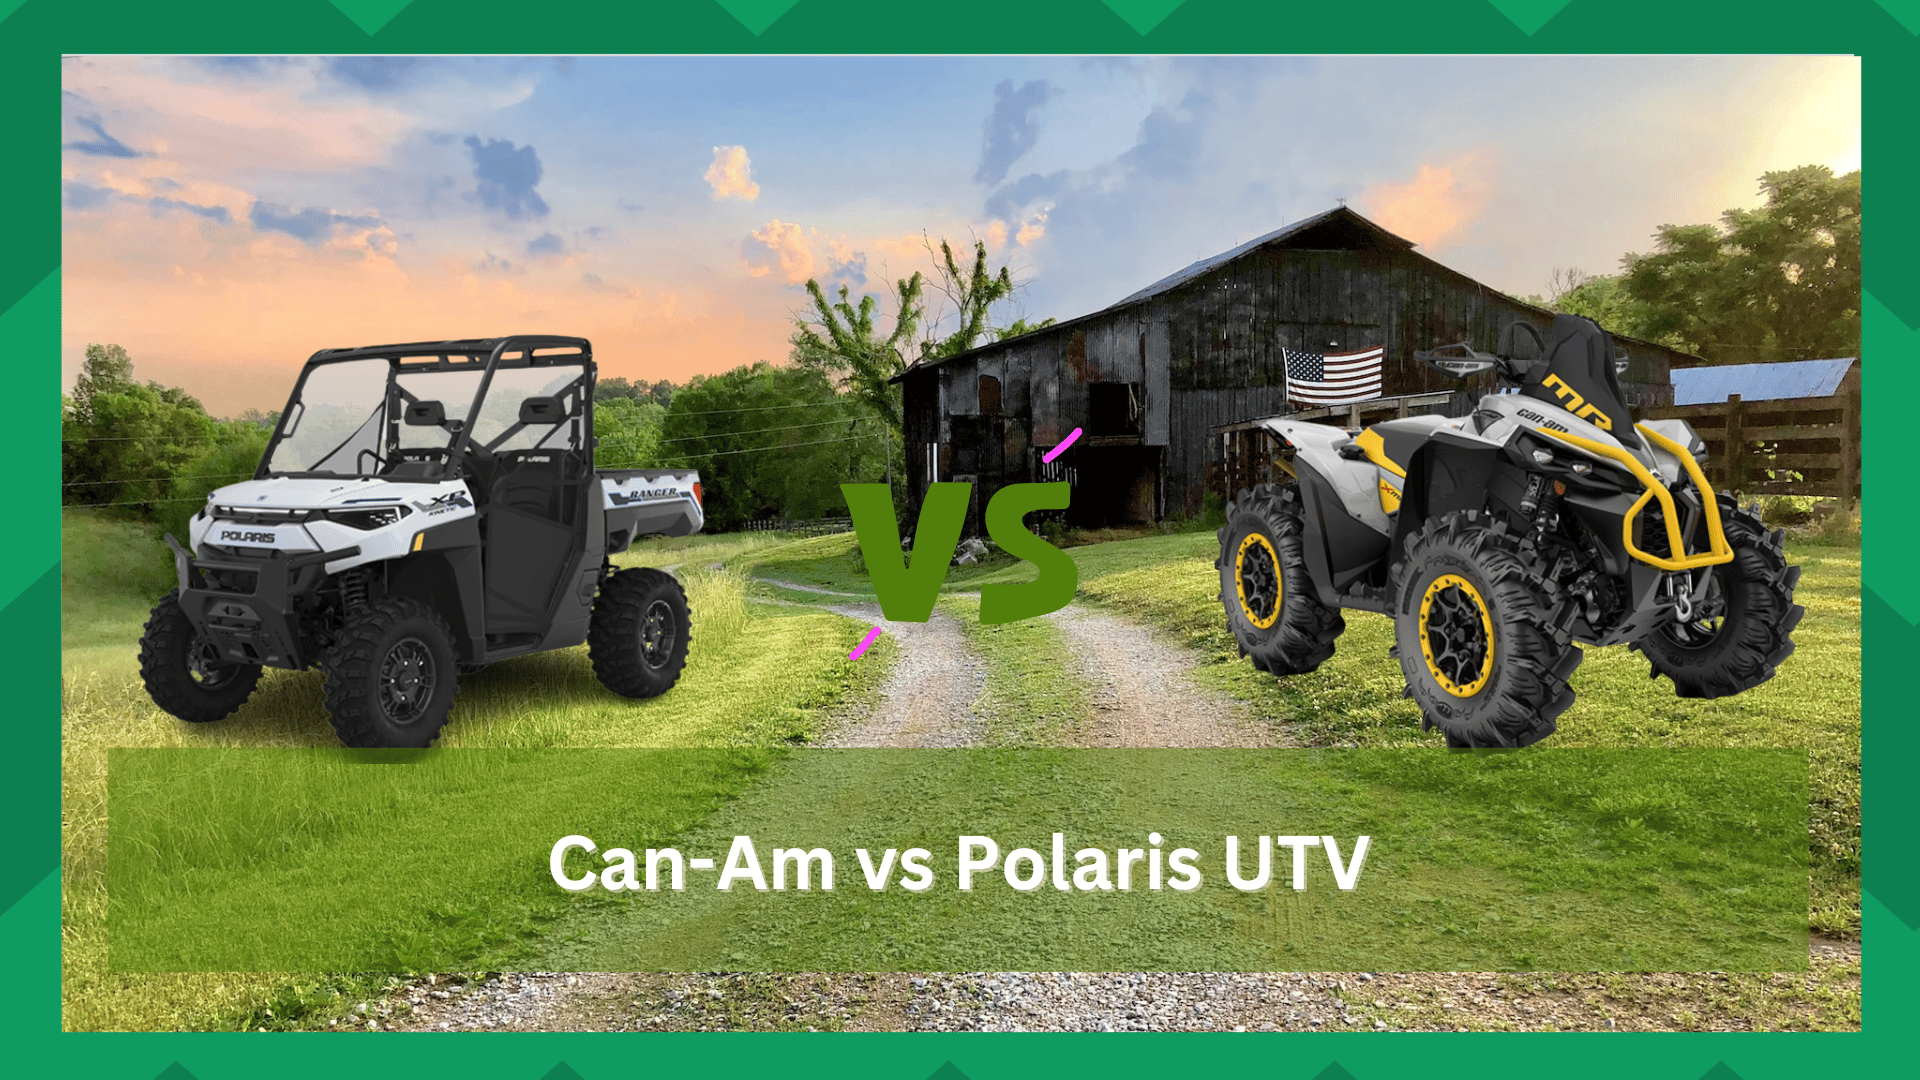 can-am vs polaris utv reliability